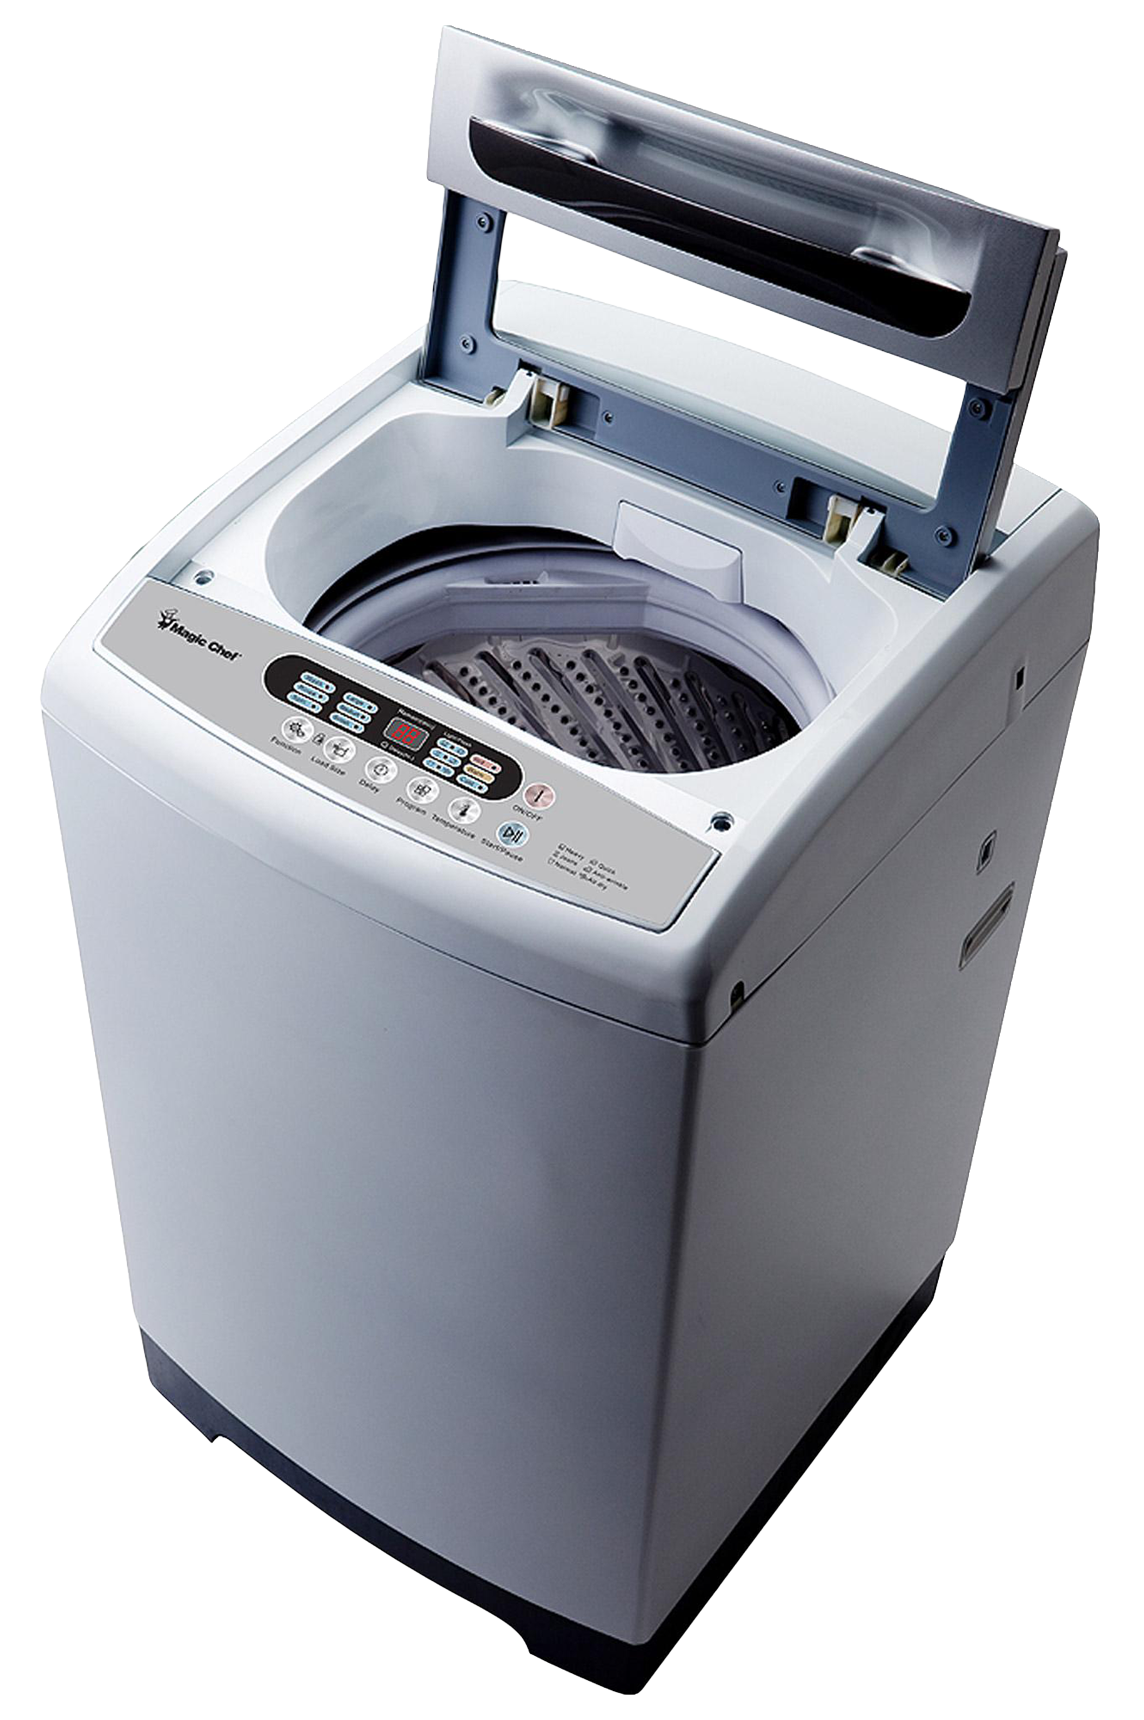 Washing Machine Png Image Purepng Free Transparent Cc Png Image | The ...